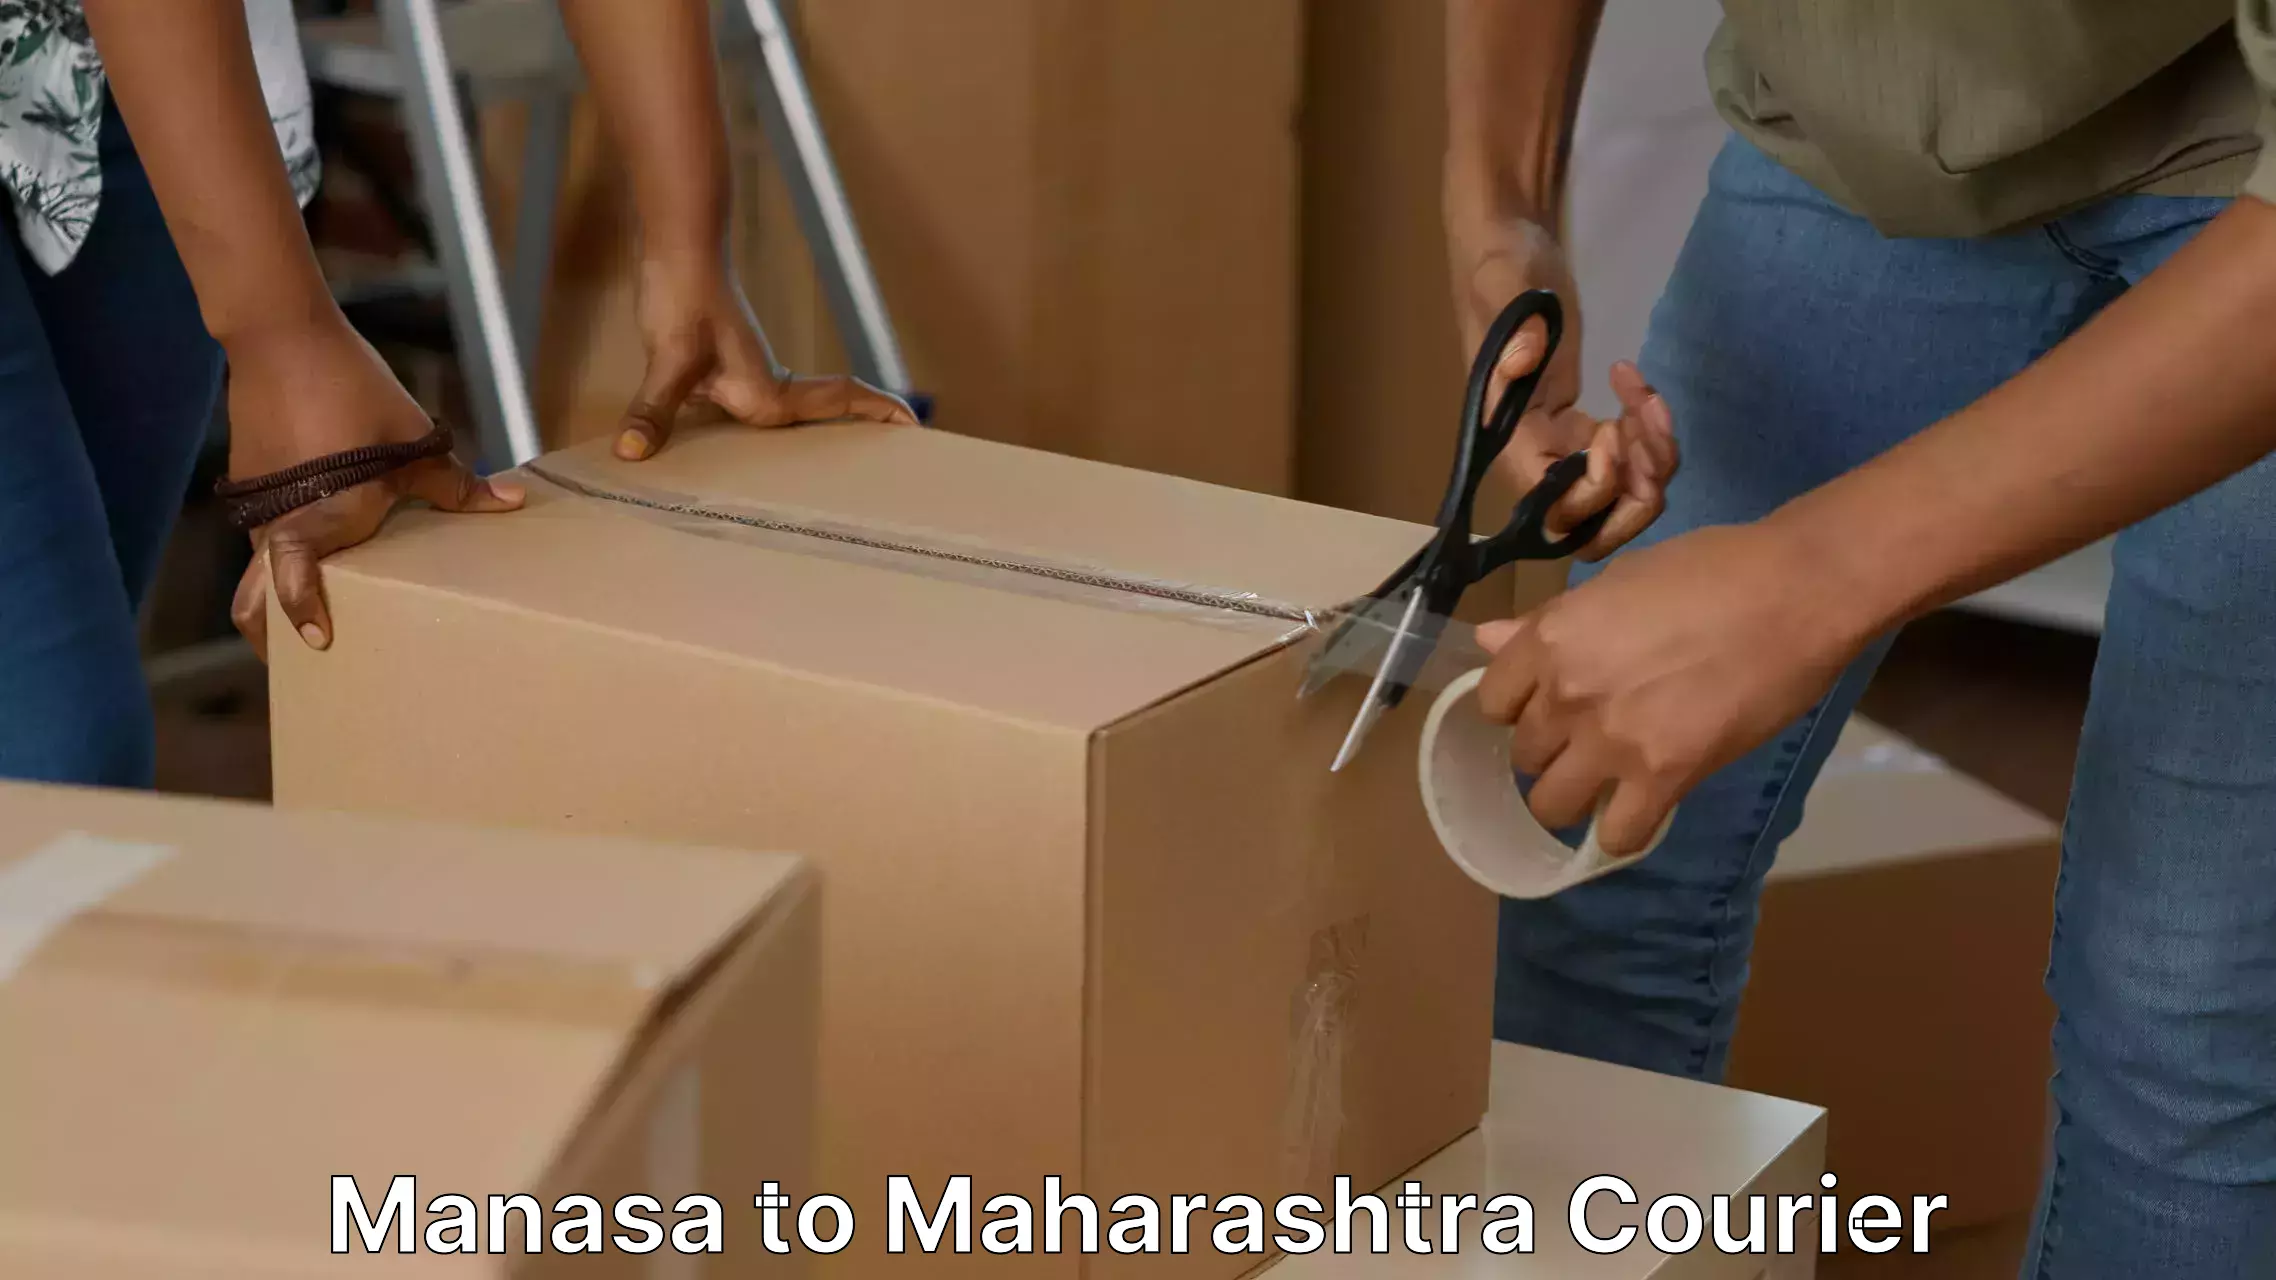 Moving and handling services Manasa to Maharashtra